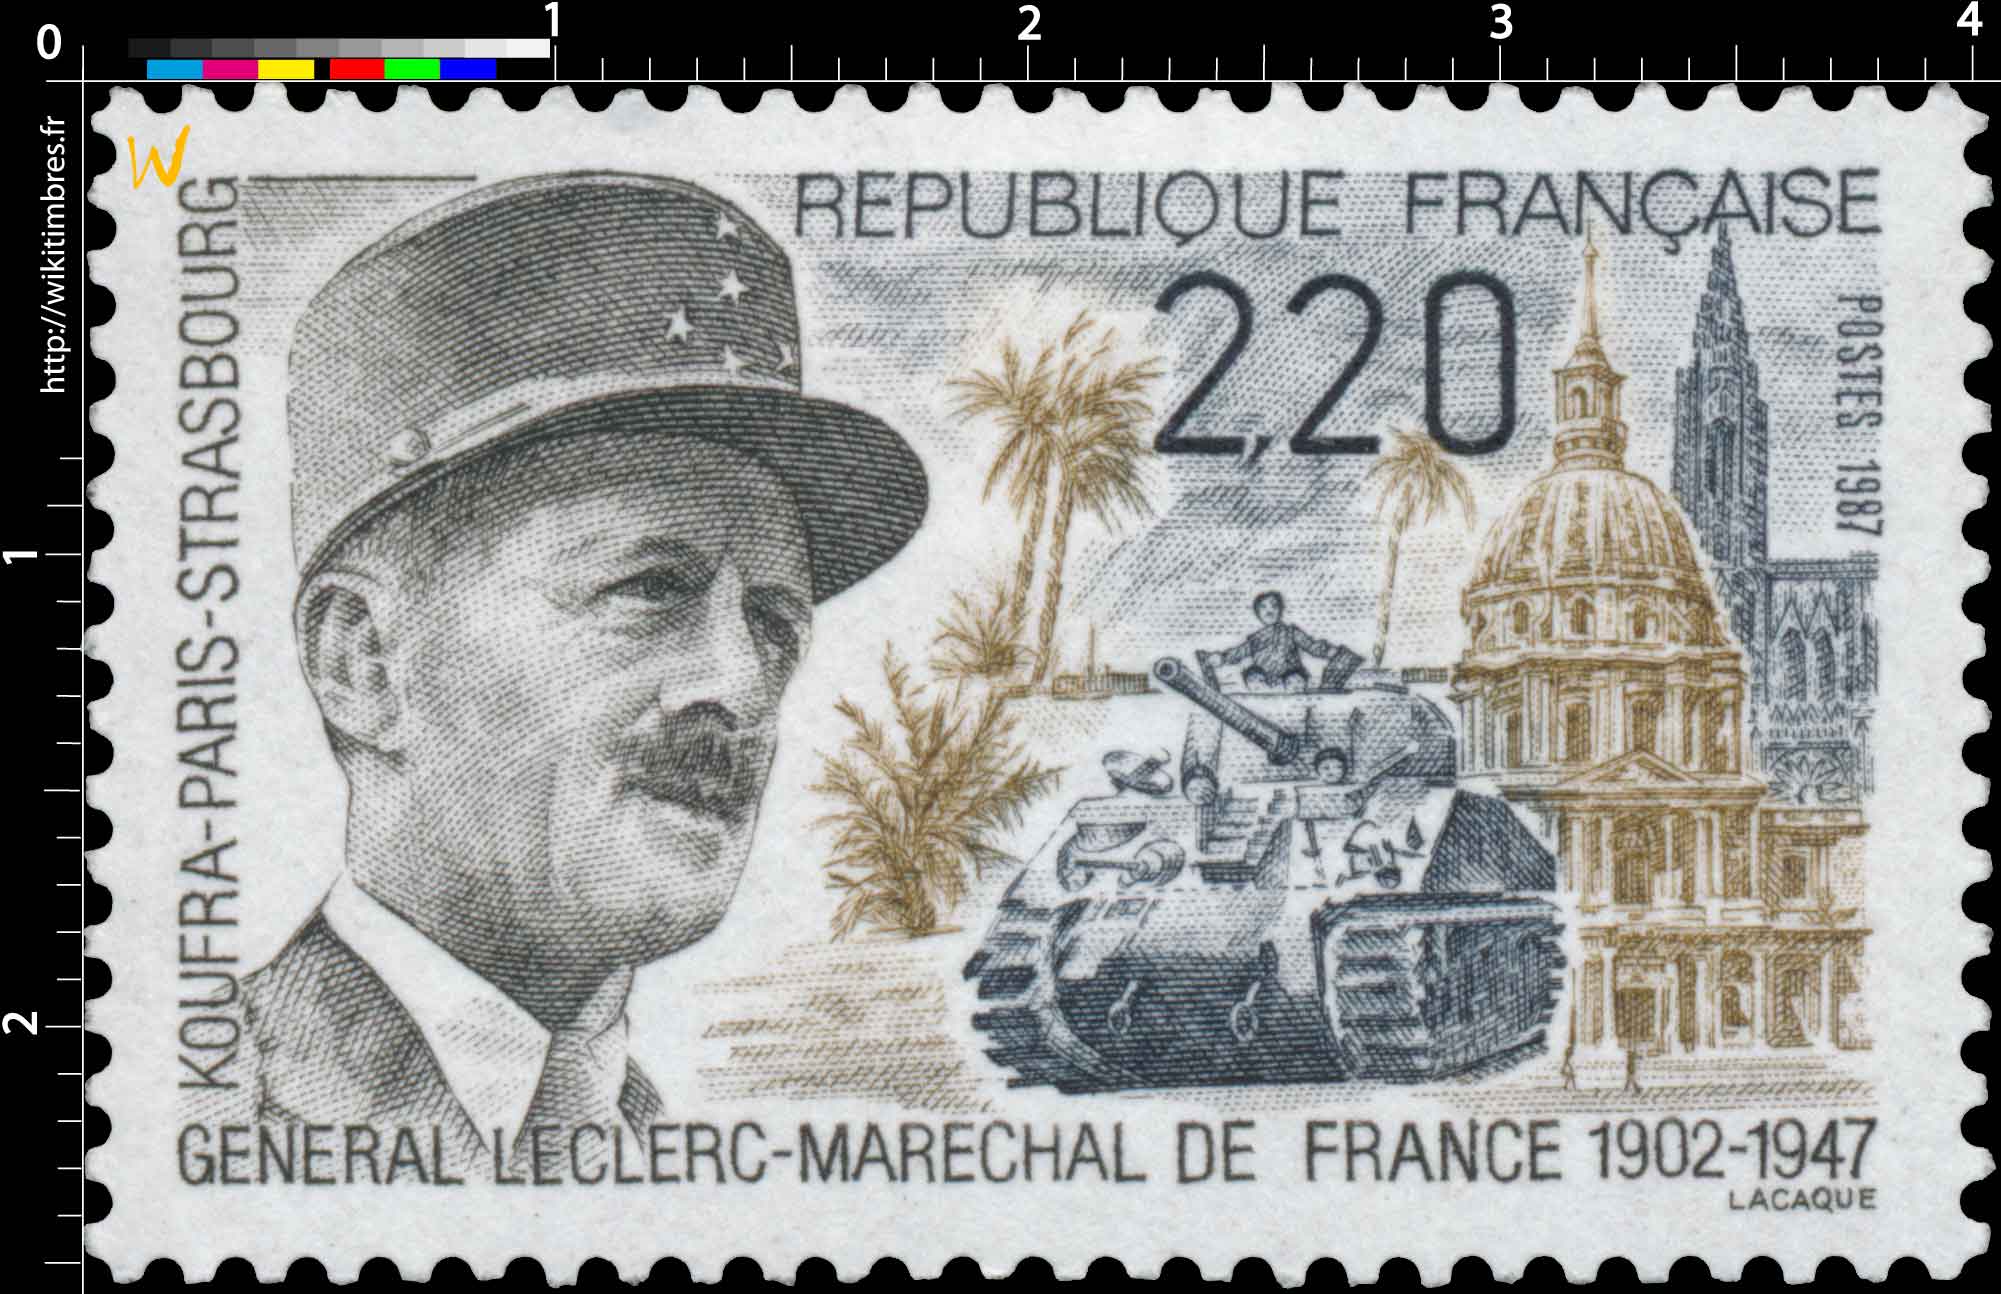 1987 GÉNÉRAL LECLERC-MARECHAL DE FRANCE 1902-1947 KOUFRA-PARIS-STRASBOURG